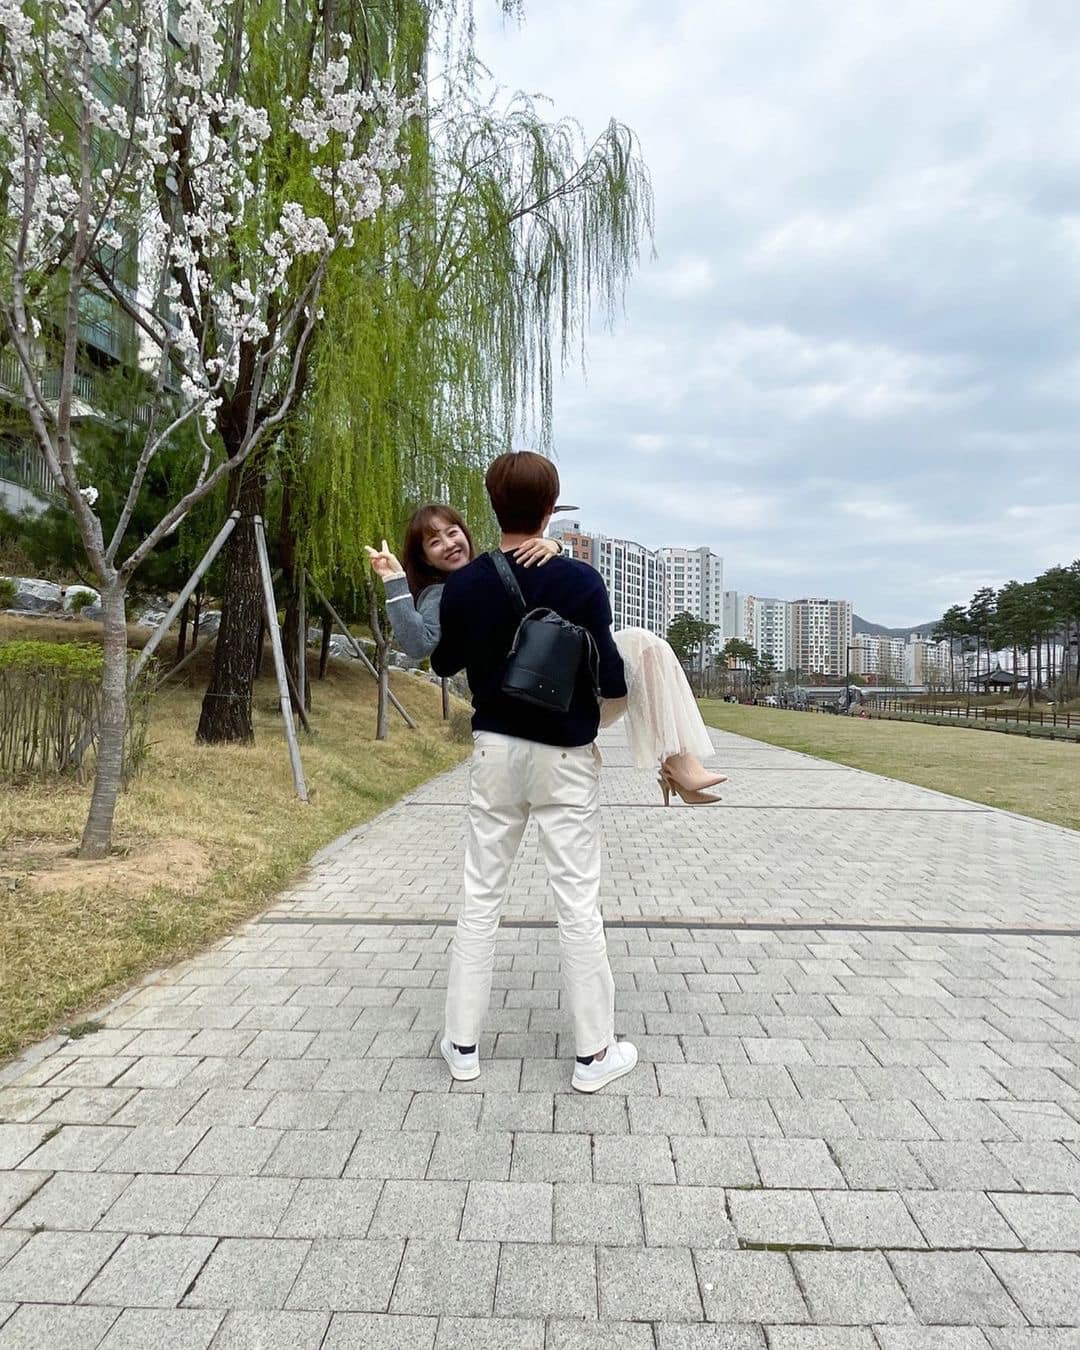 Cặp đôi bùng nổ visual được hóng nhất hiện tại, chênh lệch chiều cao quá lớn khiến netizen thích thú - Ảnh 8.